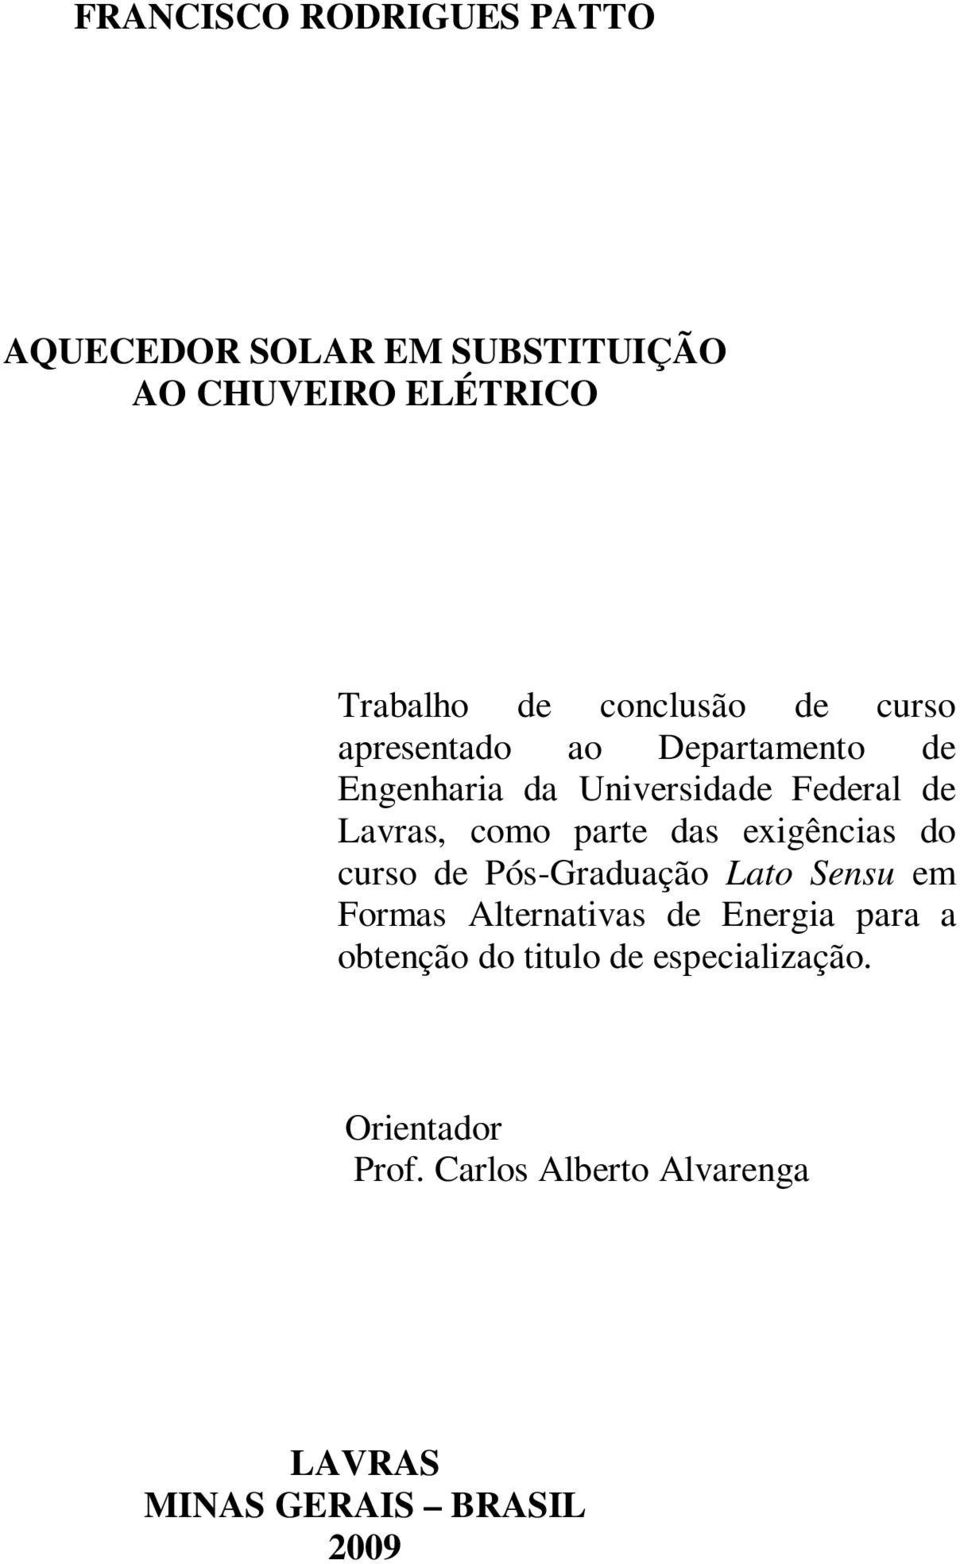 exigências do curso de Pós-Graduação Lato Sensu em Formas Alternativas de Energia para a obtenção do